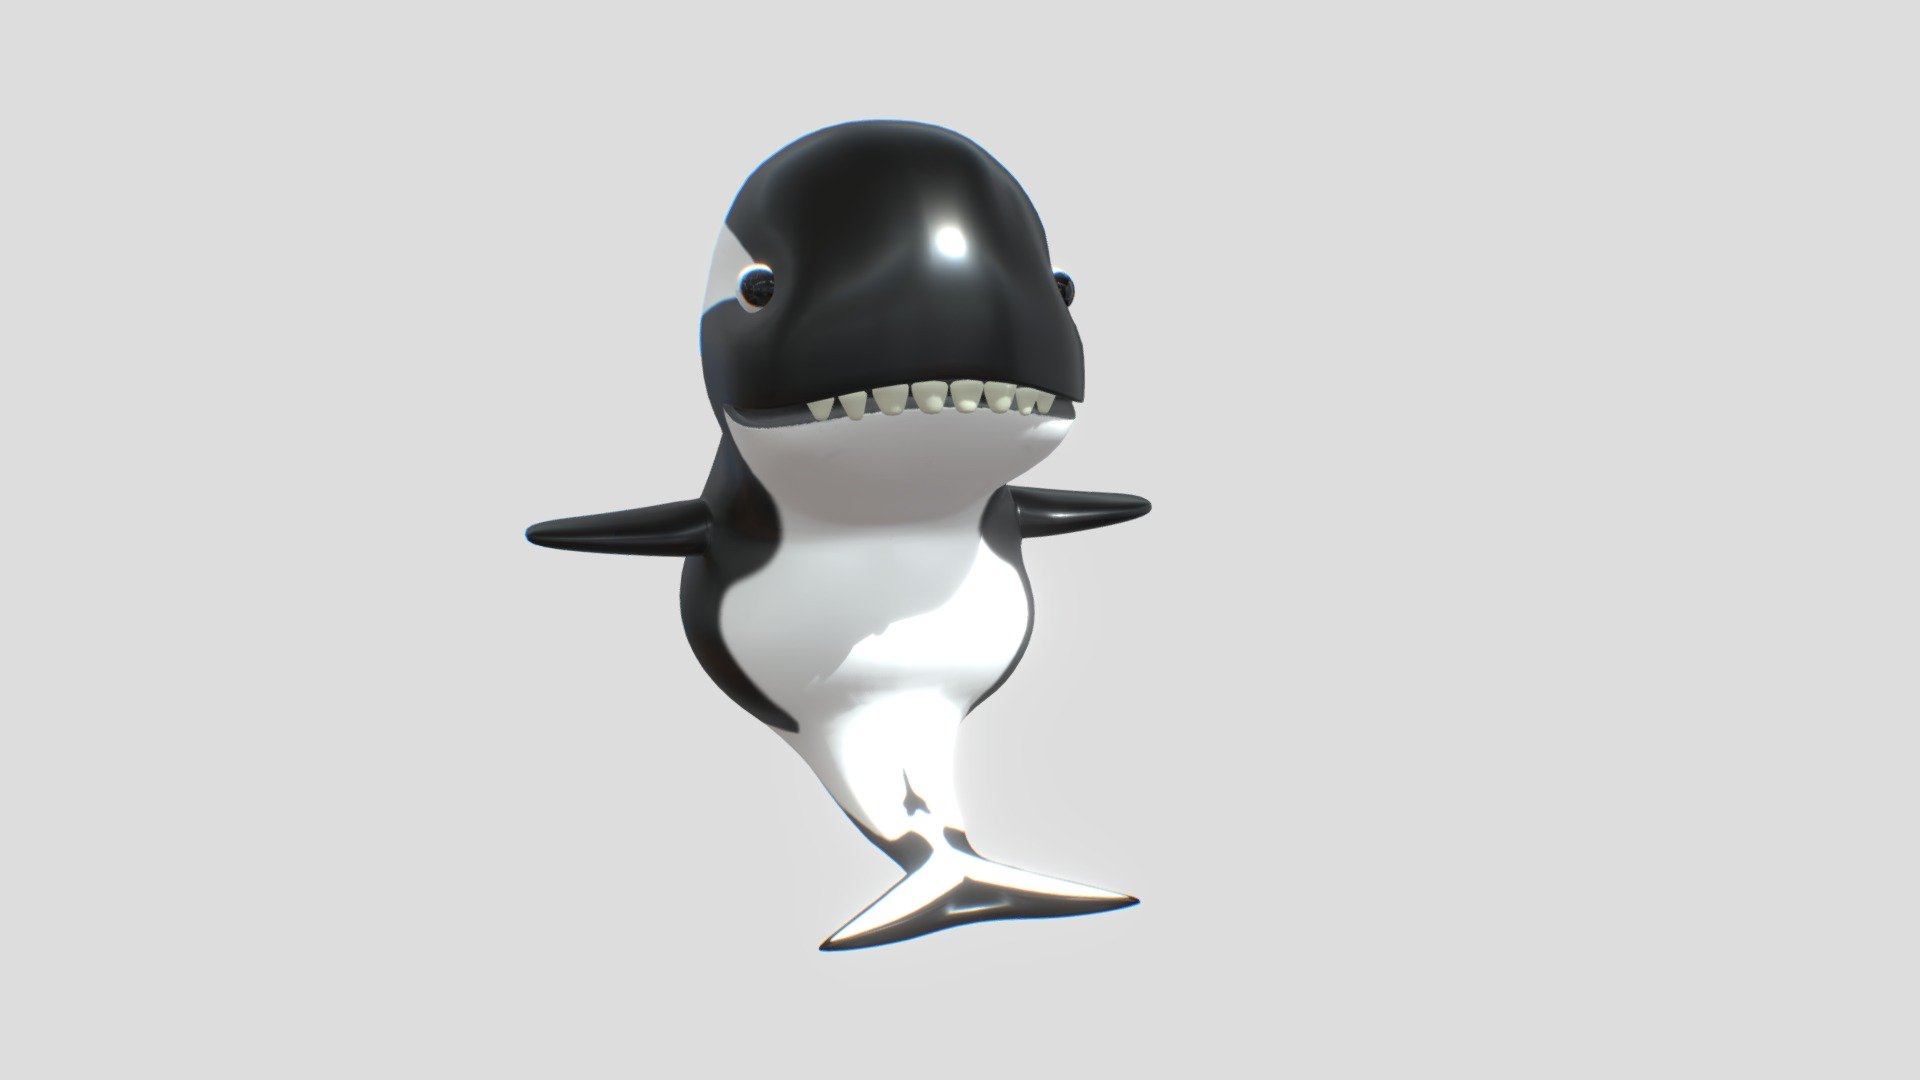 modelo de una orca de la antártica versión cartoon, espero les guste :) - orca cartoon - Download Free 3D model by ignachaaa 3d model